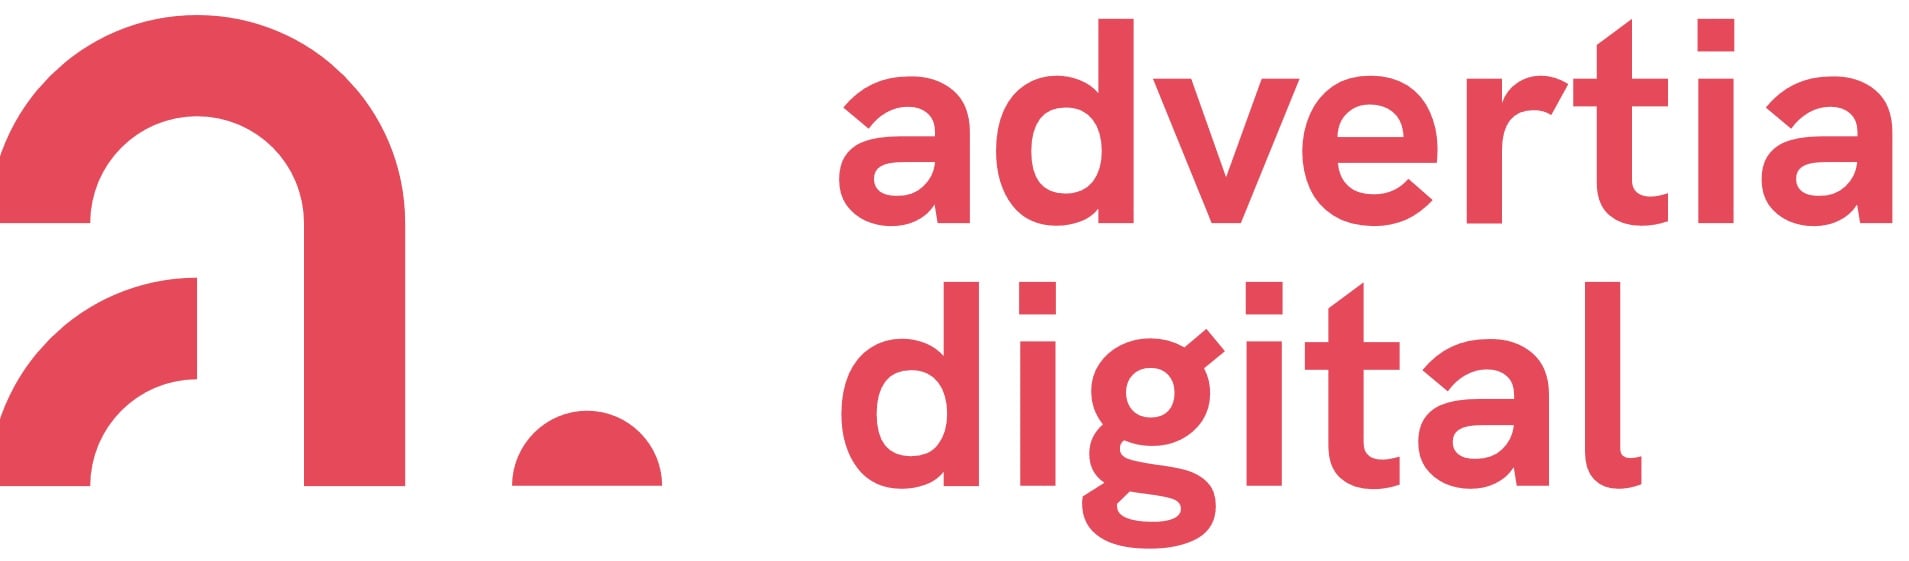 digitym | advertia digital logo